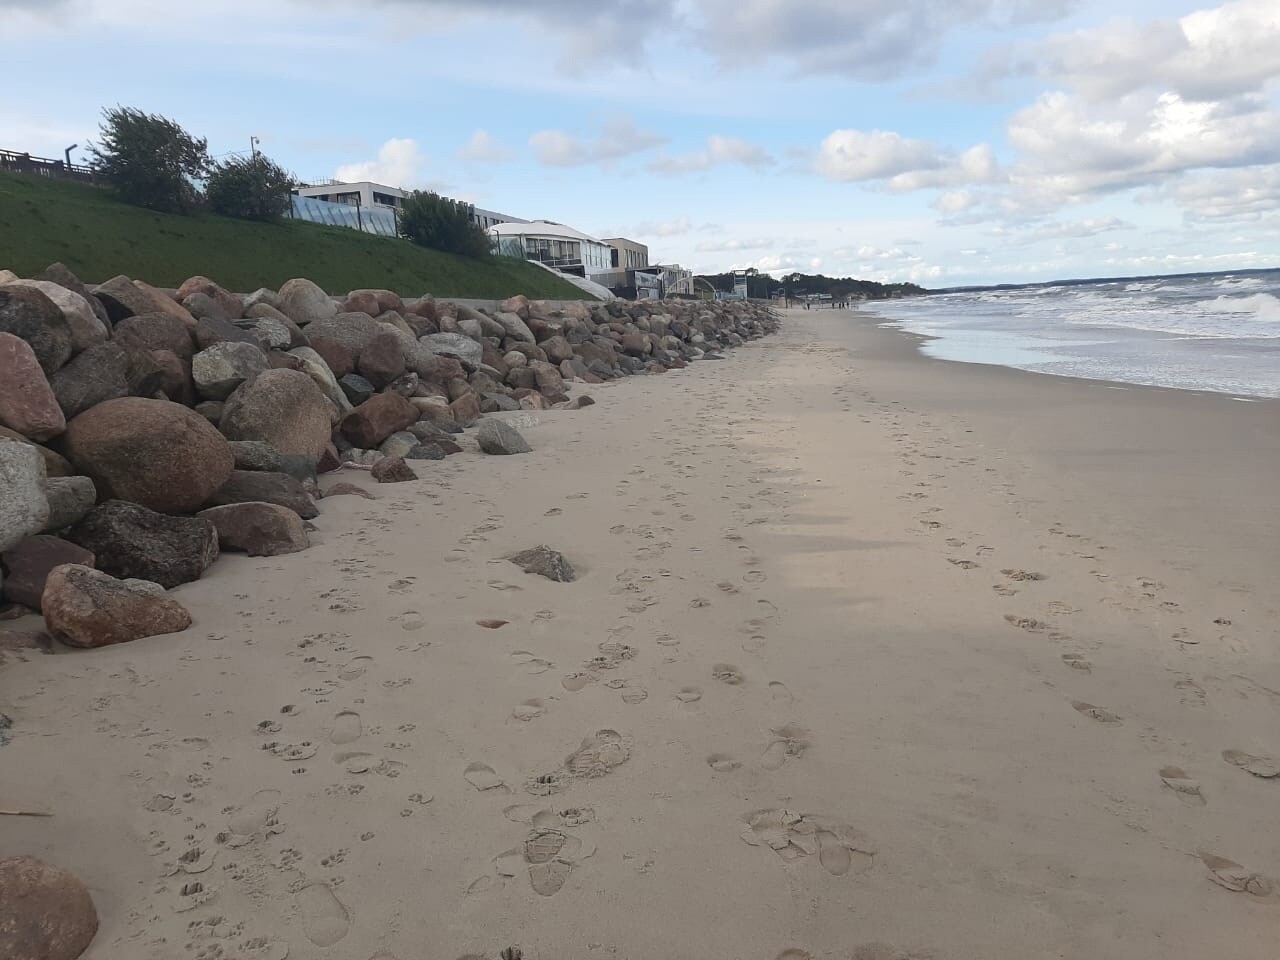 Циклон "Патрик" уменьшил ширину морских пляжей Калининградской области